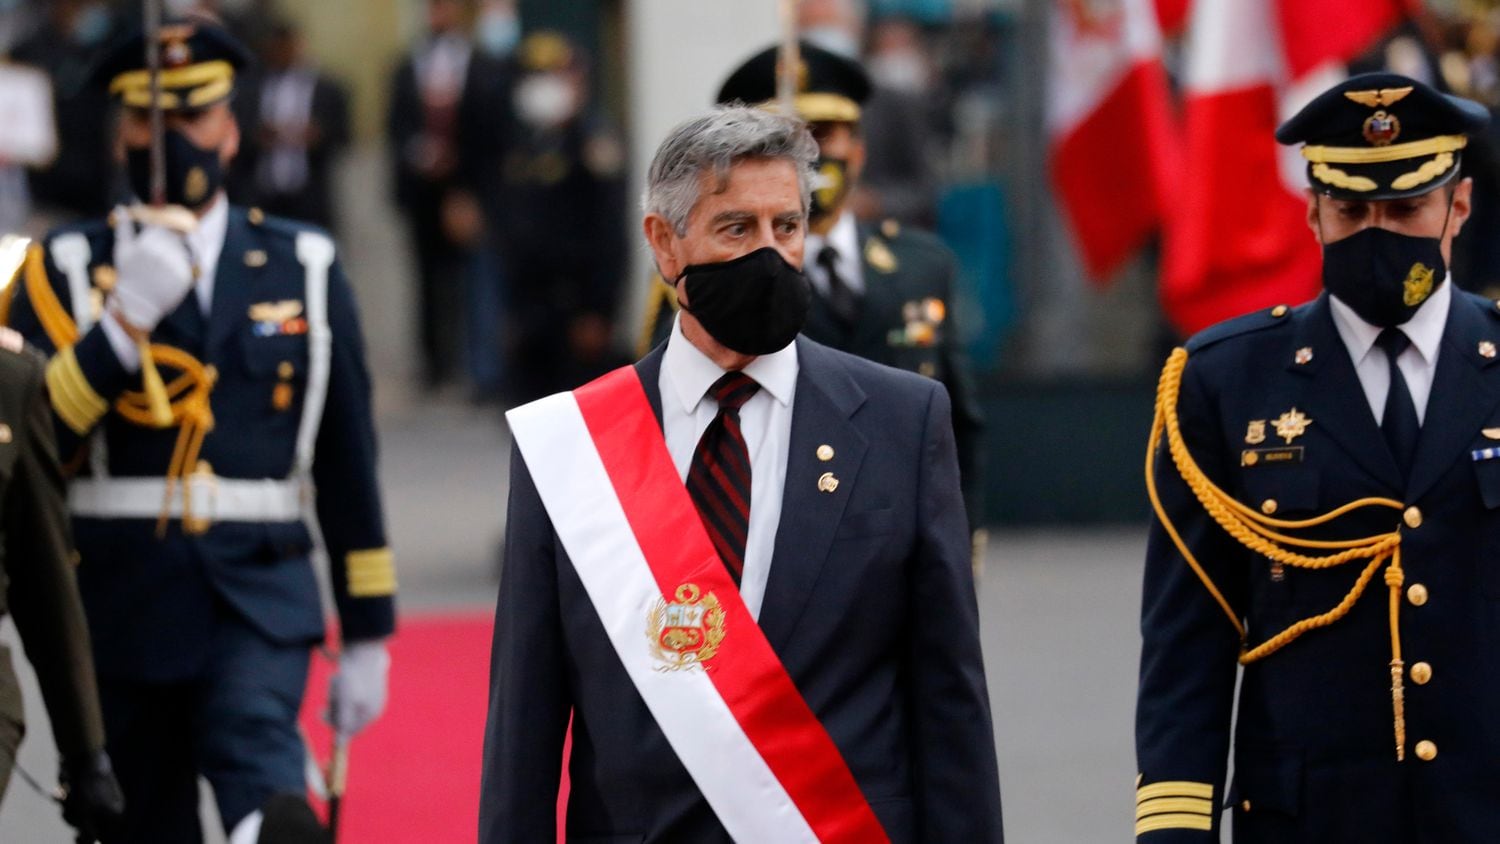 O presidente do Peru, Francisco Sagasti, durante cerimônia no dia 17 de novembro.